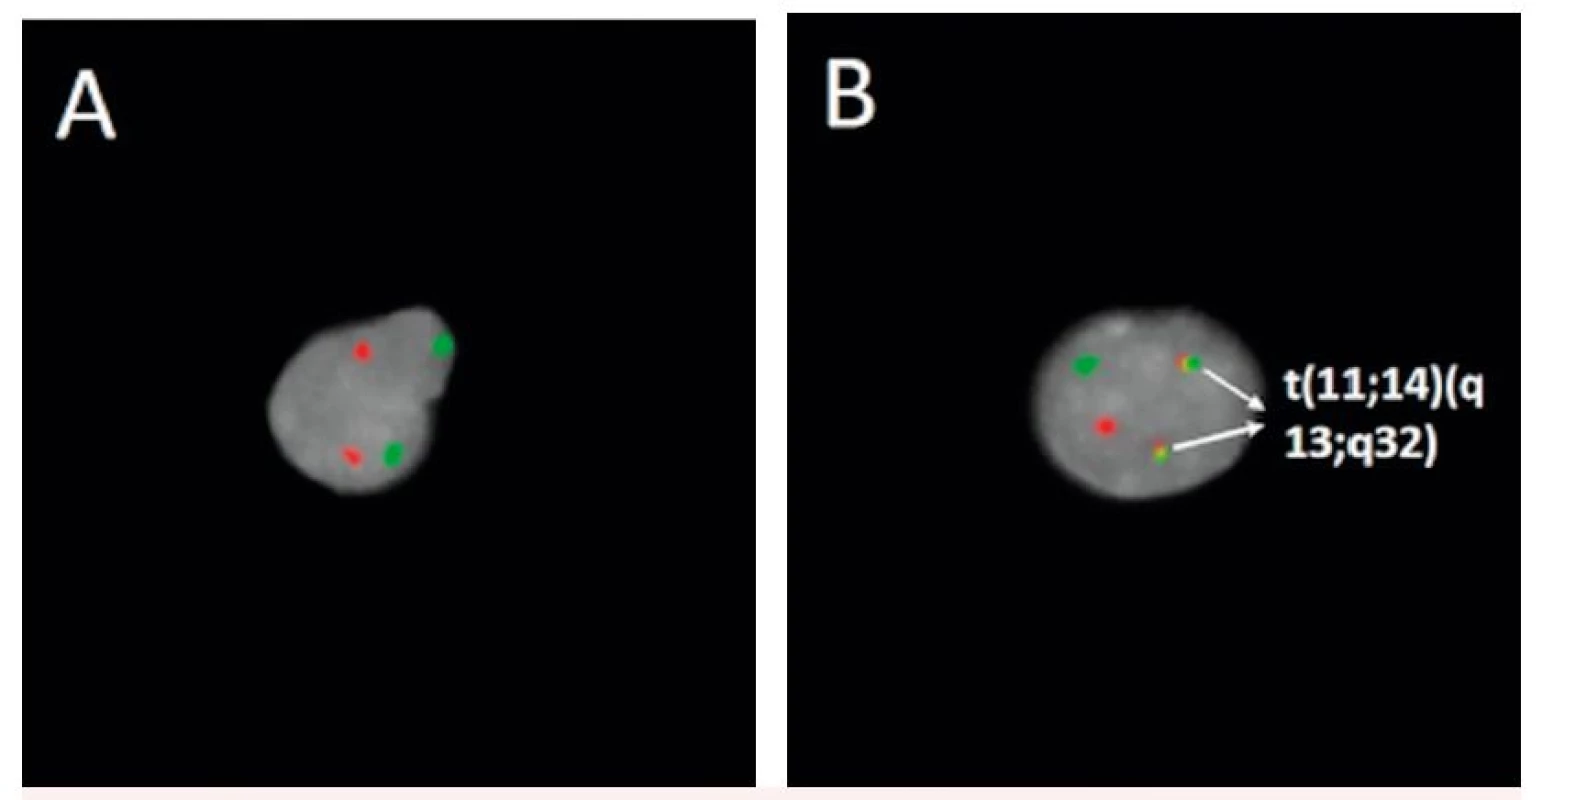 Detekce t(11;14)(q13;q32) fluorescenčně značenou genovou sondou 
A – negativní nález, B – pozitivní nález (označeny šipkami)